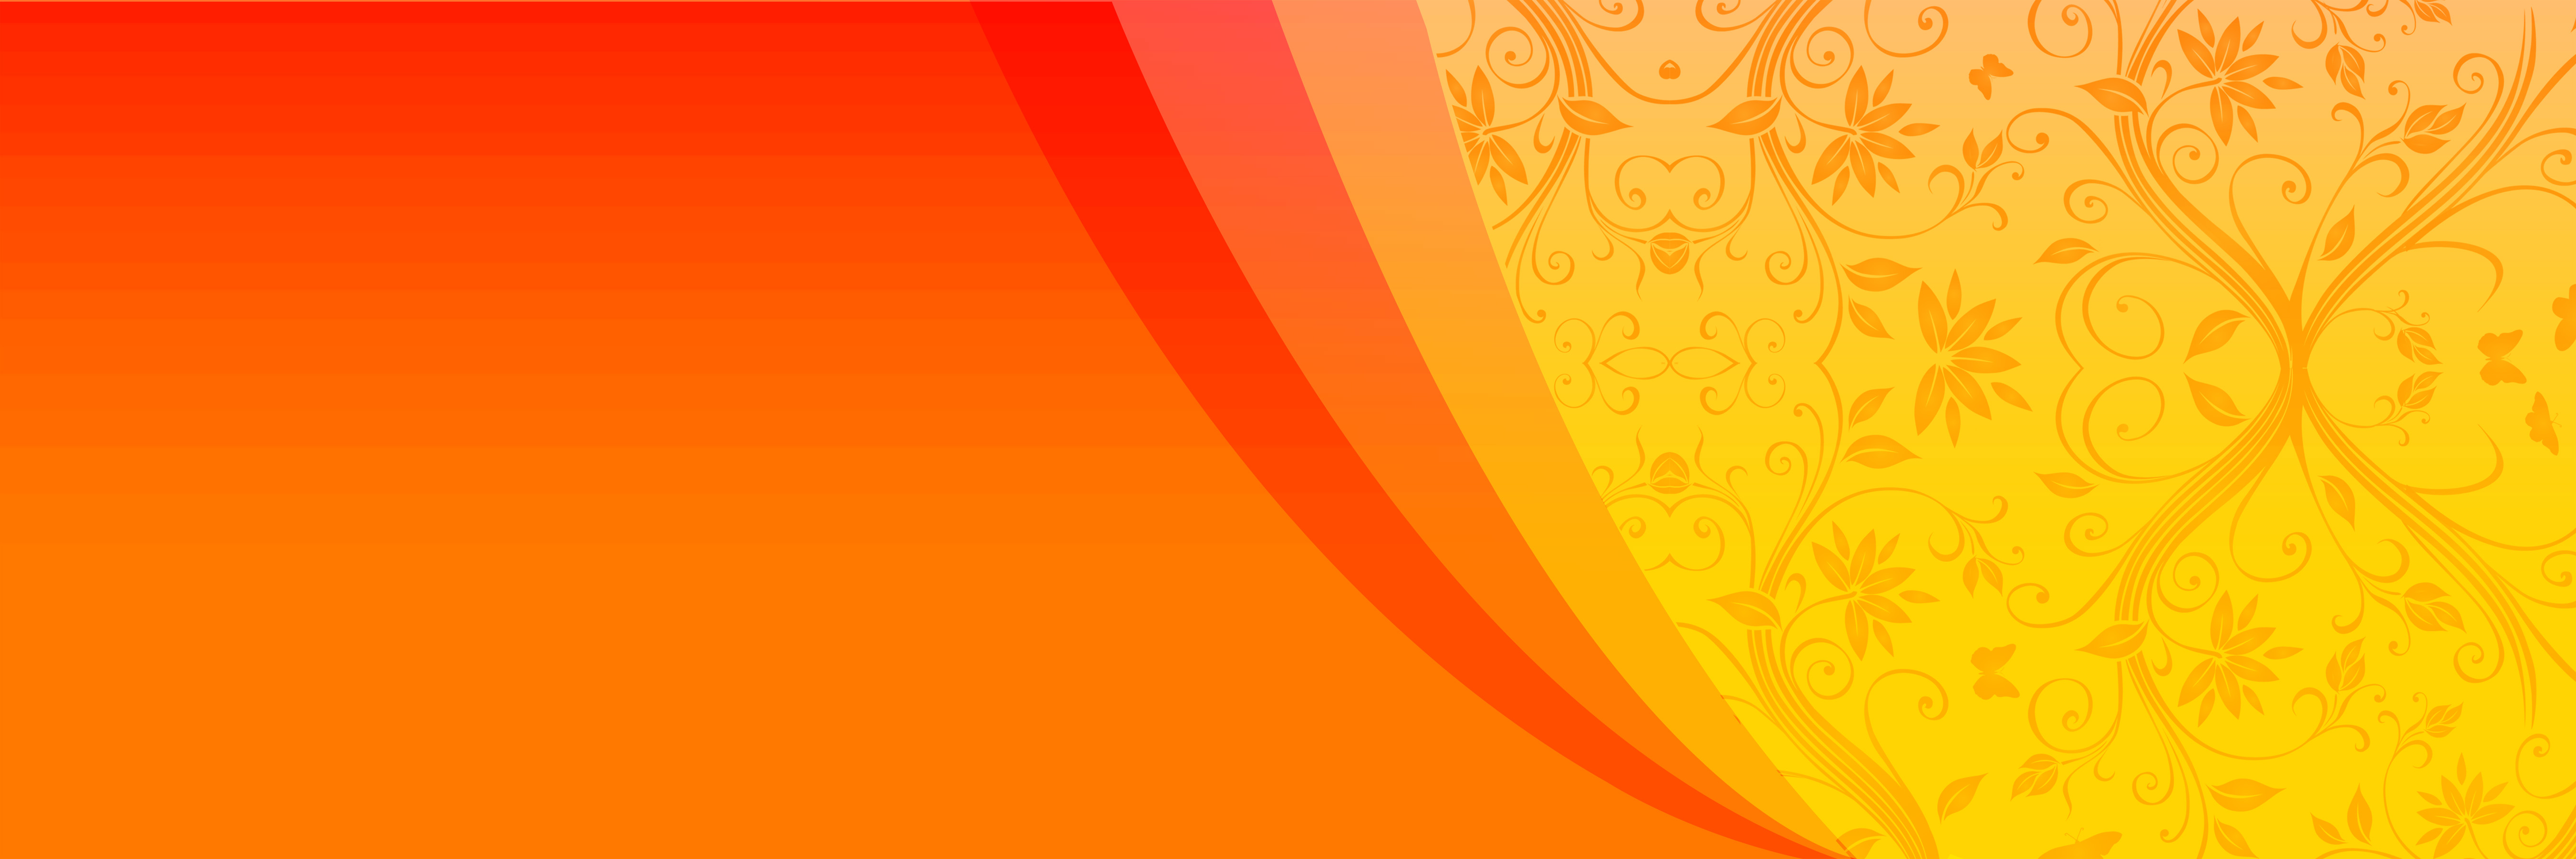 🔥 Yellow Orange Flex Banner Background Download | CBEditz